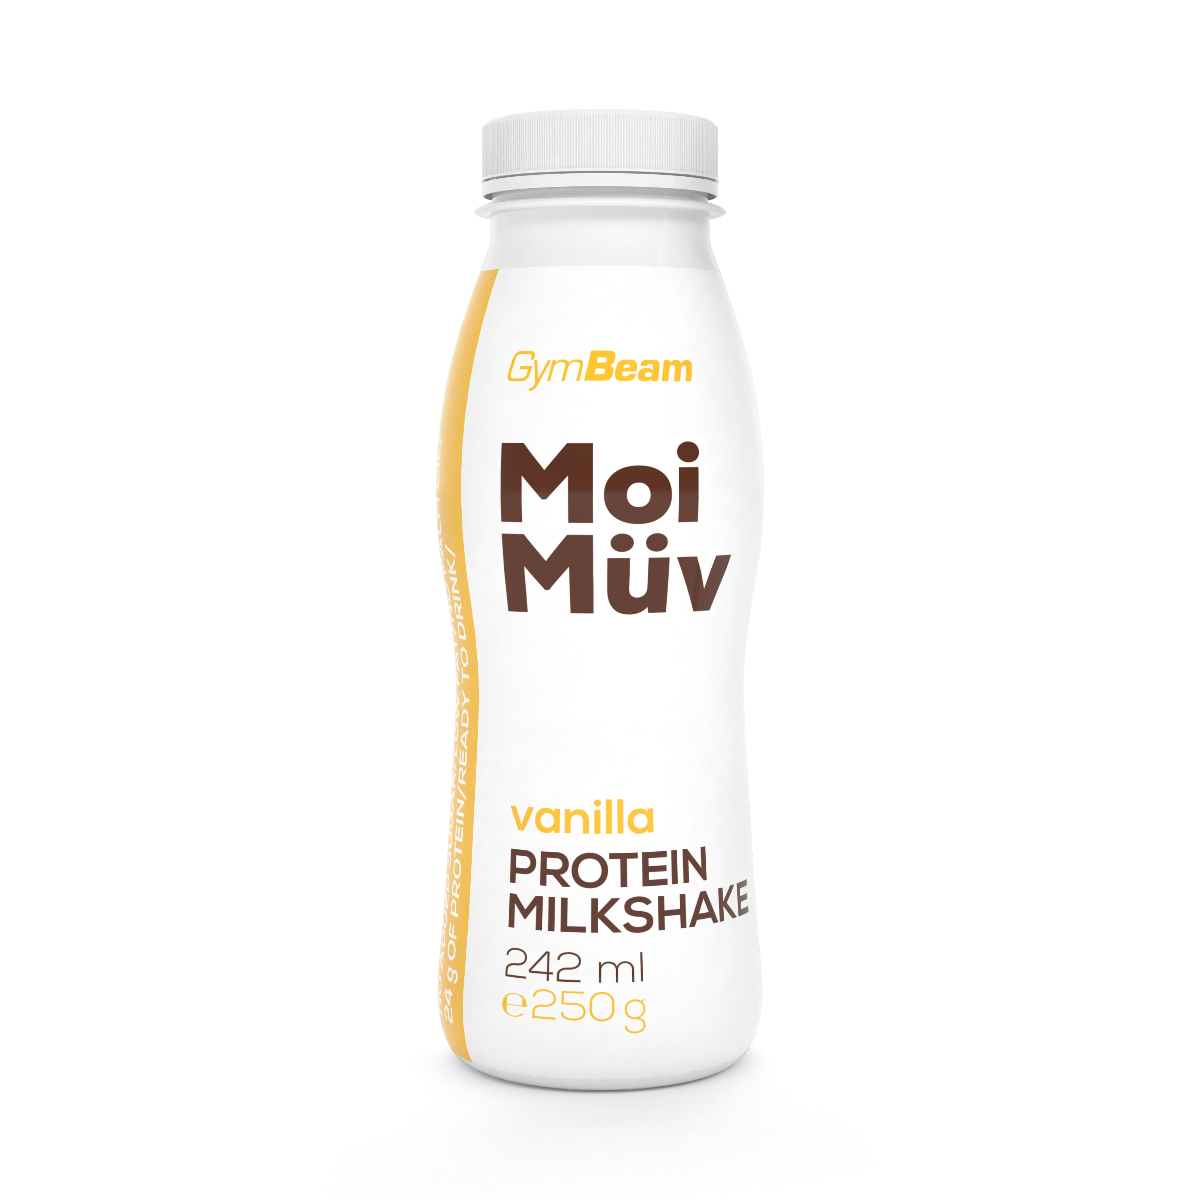 MoiMüv Protein Milkshake - GymBeam čokoláda 12 x 242 ml